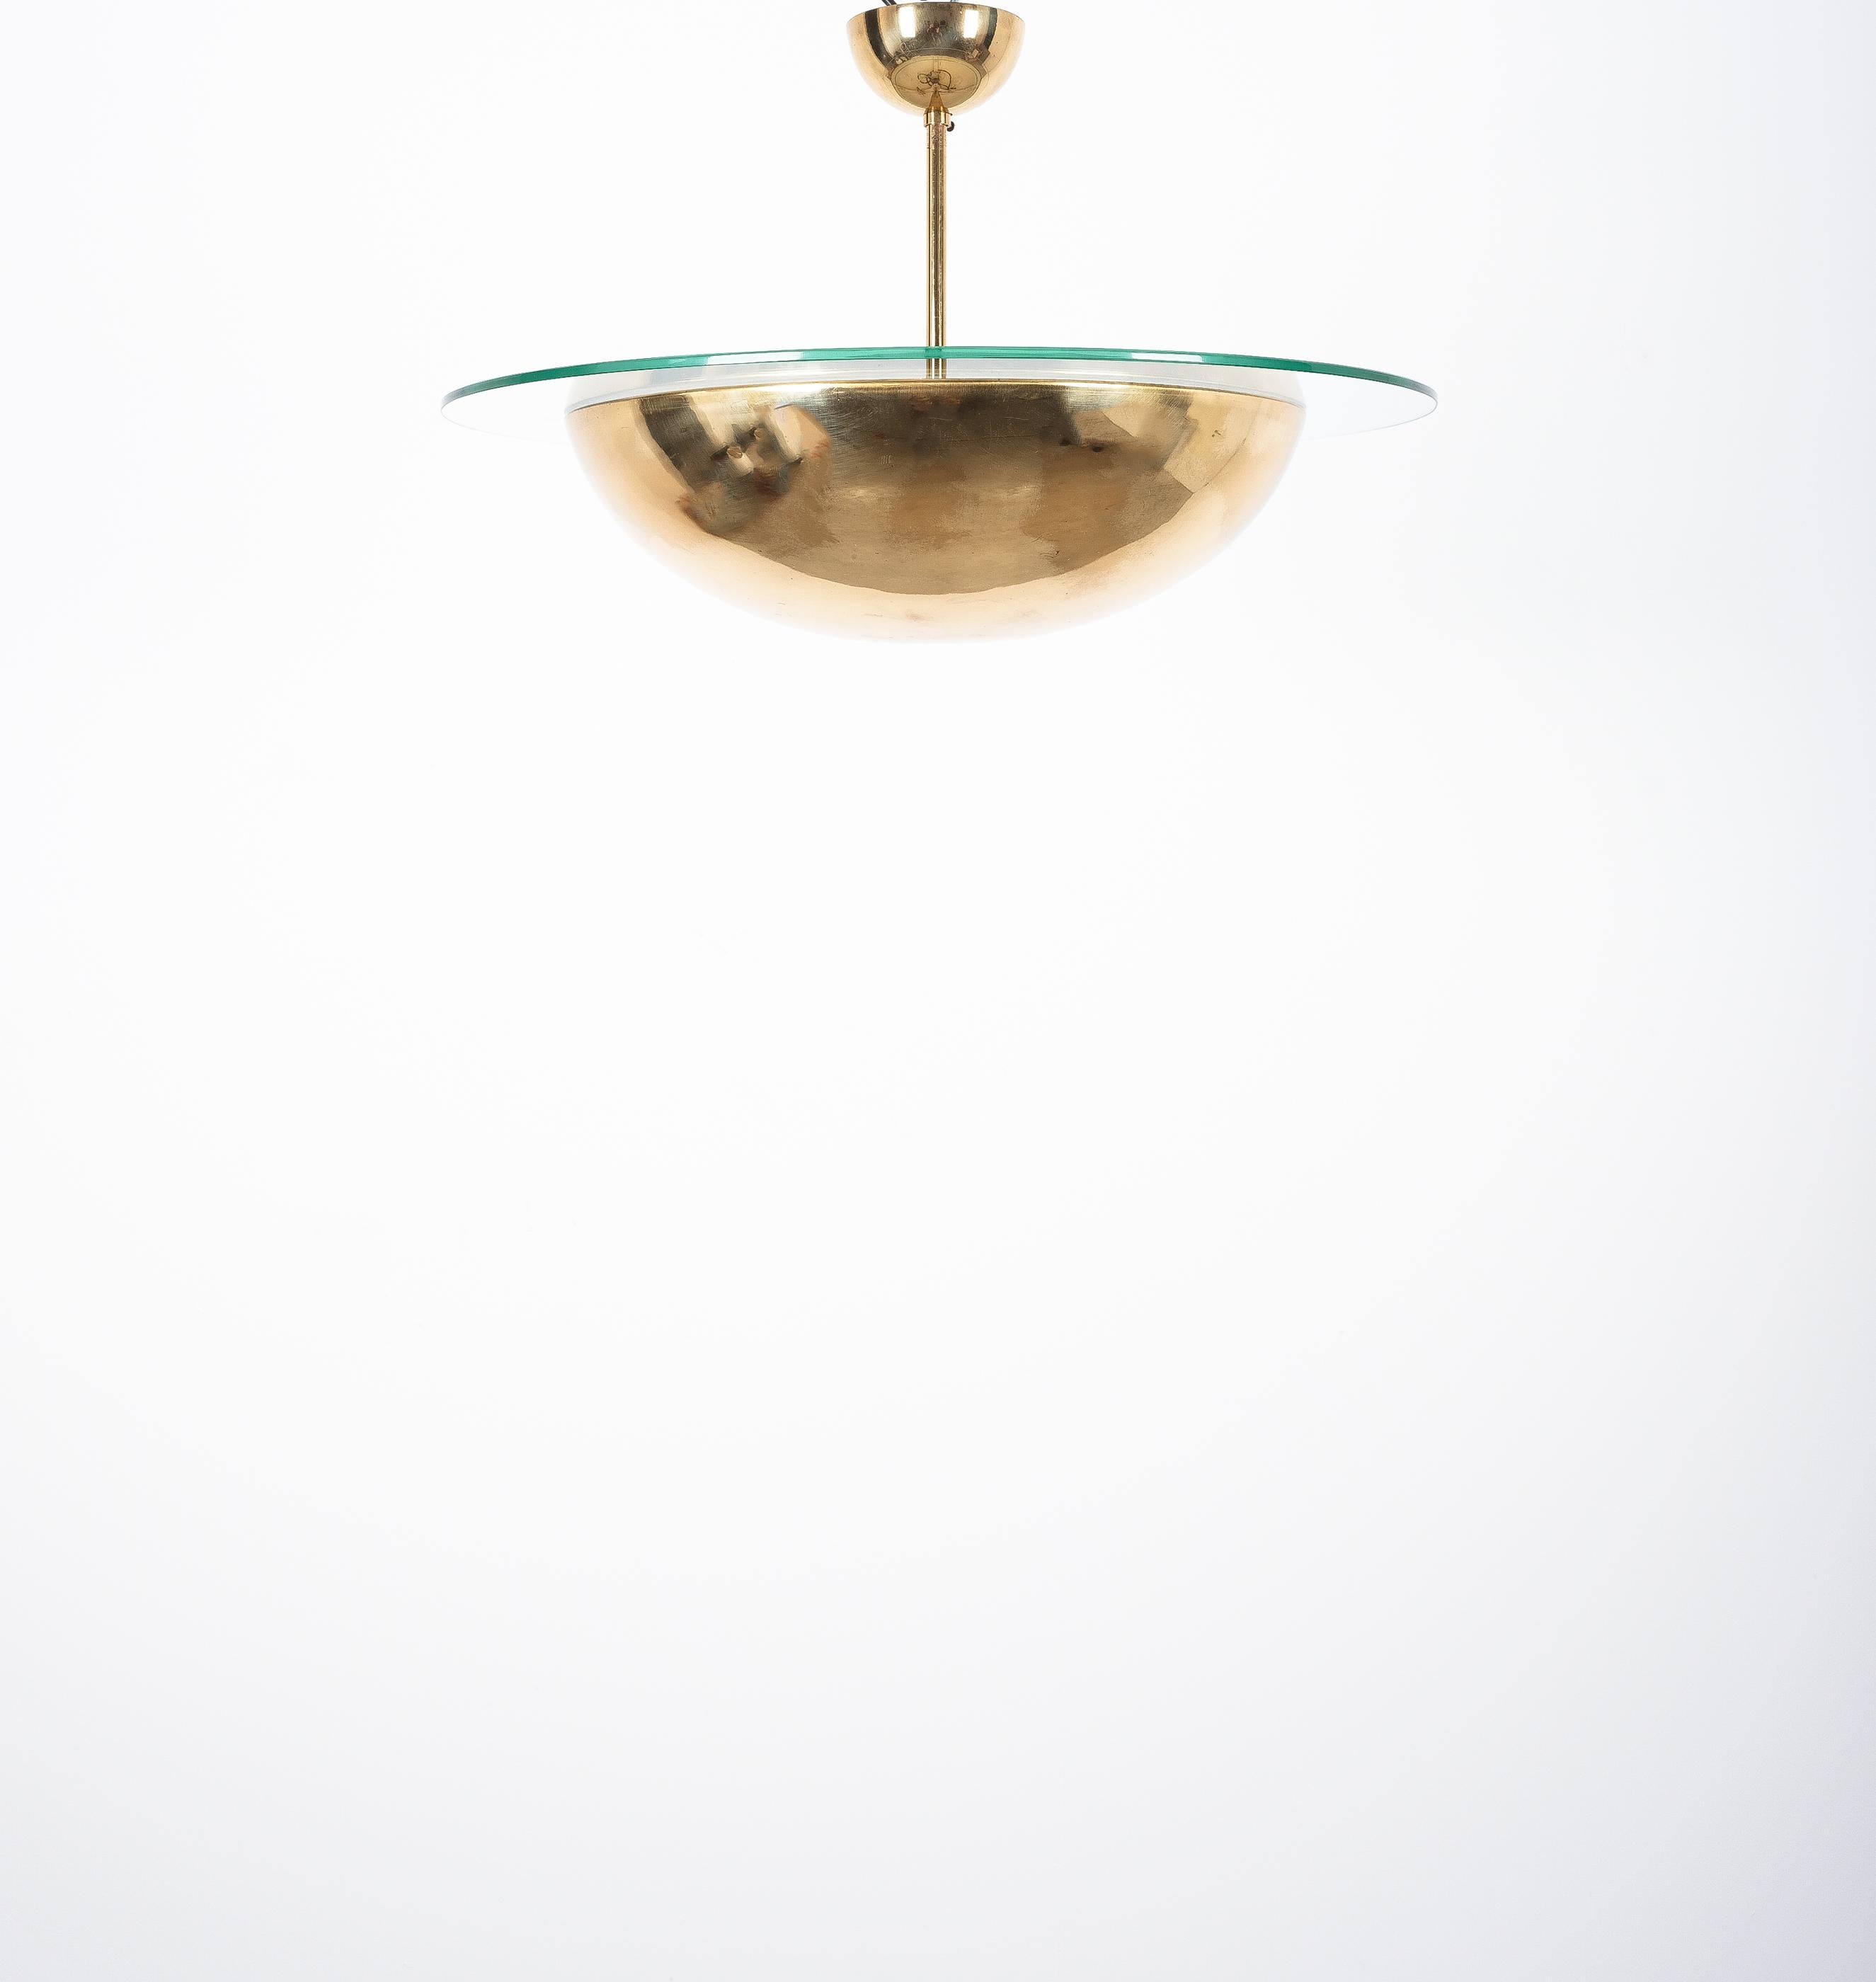 Perfekt erhaltener Vintage-Lüster von J.T Kalmar, Österreich, um 1970
Dieses Stück, das an klassische Art-Déco-Fassungen erinnert, besteht aus einer einzelnen Messingschale mit einem Glasring, der sie umgibt. Drei Glühbirnen mit insgesamt bis zu